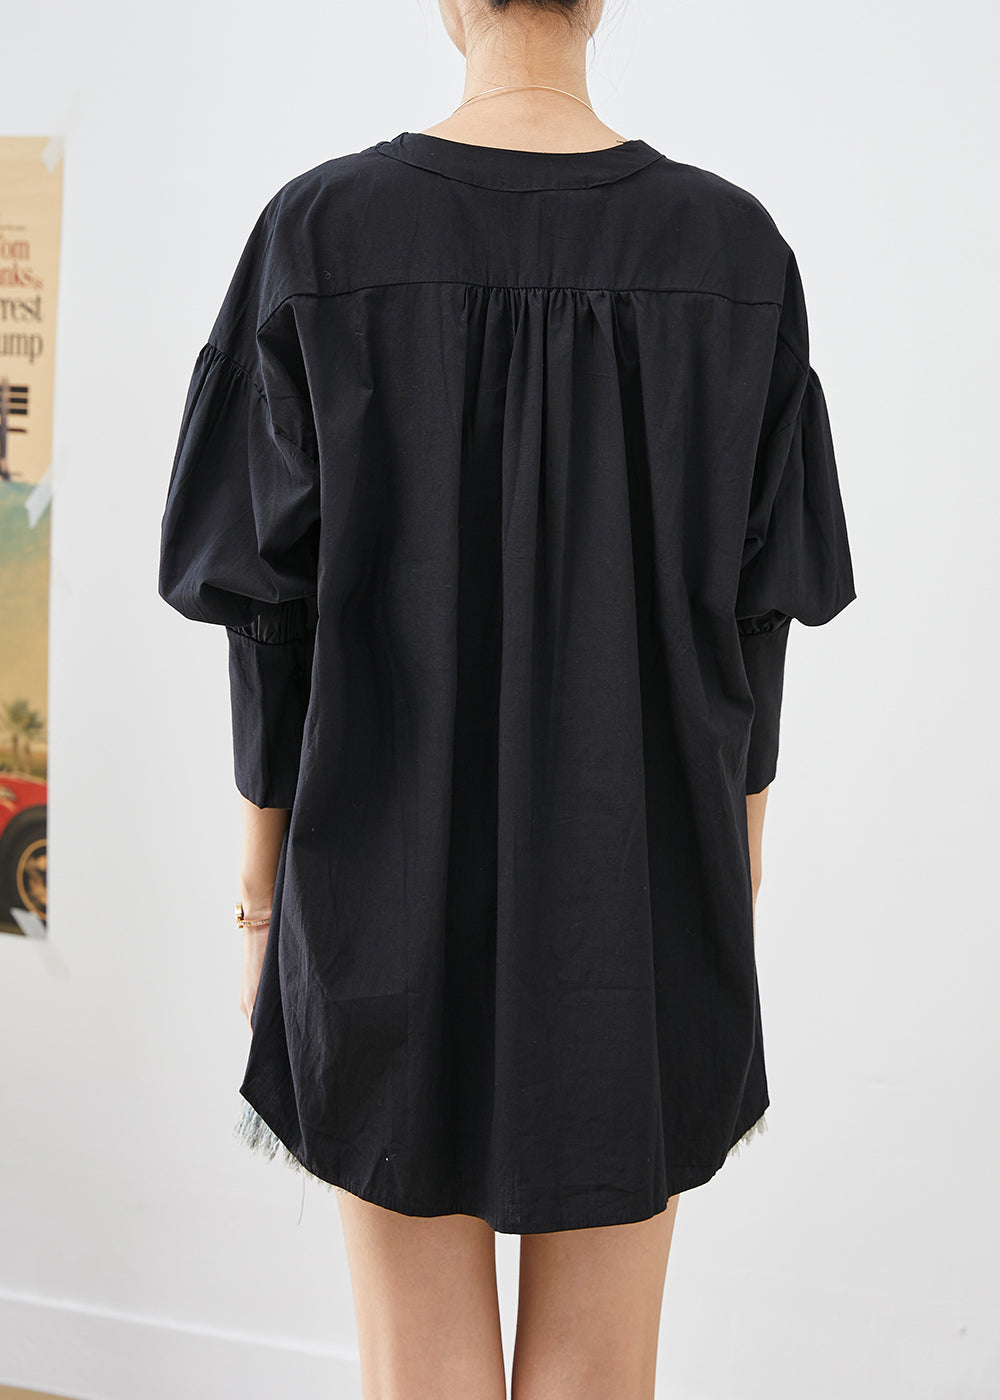 Unique Black Heart Neck Low High Design Cotton Shirt Top Fall